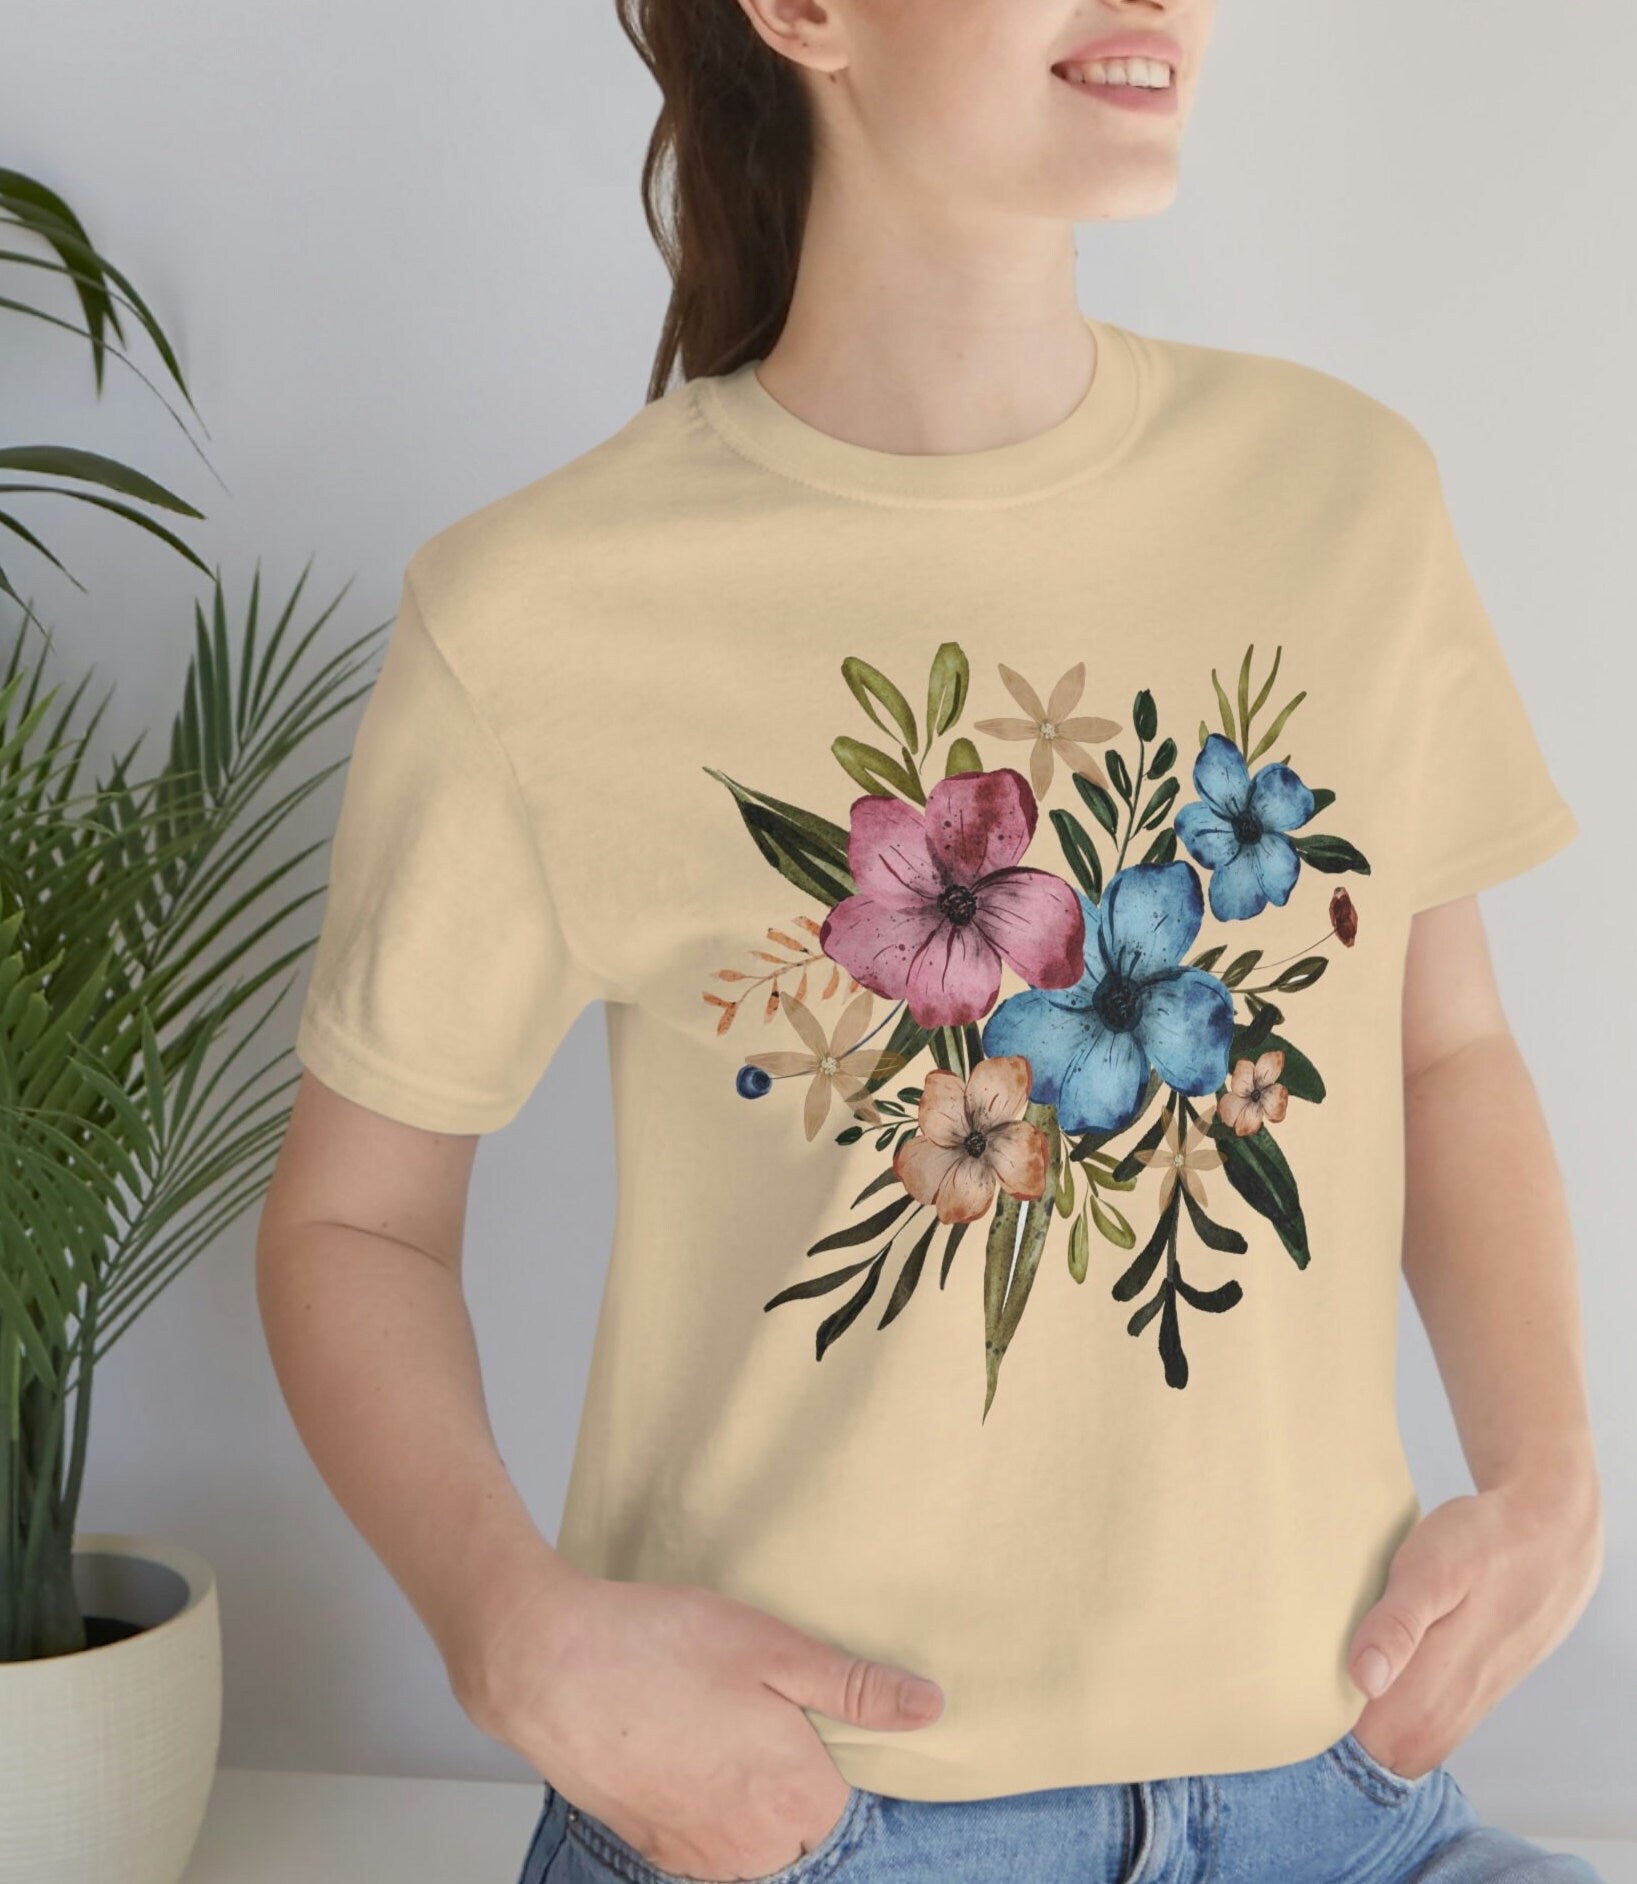 Botanical Shirt, Wildflowers Shirt, Gardening Shirt, Wild Flowers Shirt, Oversized Tee Shirt, Gifts For Her, Nature Lover Shirt,